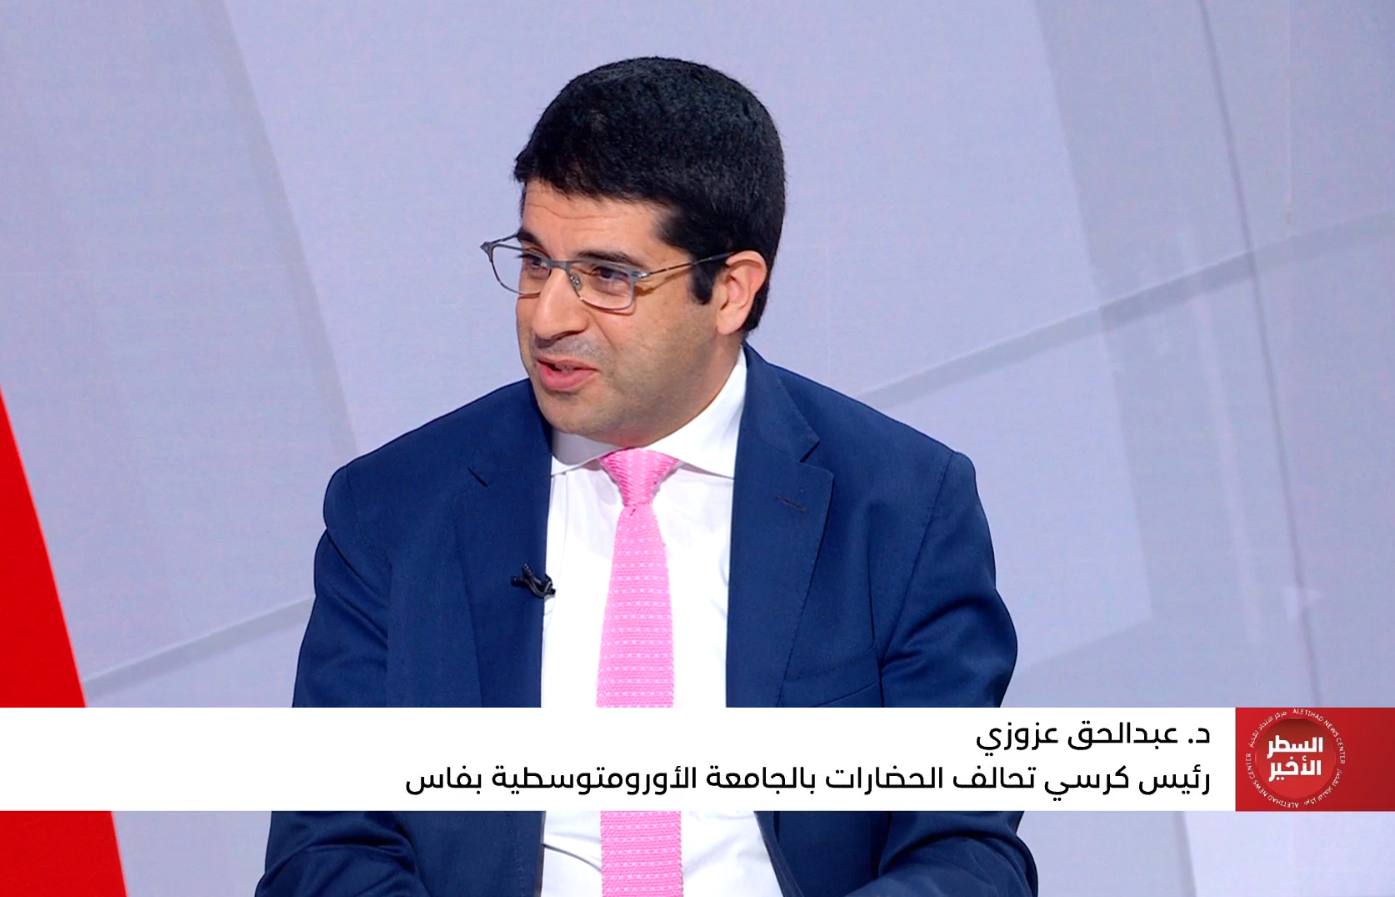 الدكتور عبد الحق العزوزي، رئيس كرسي تحالف الحضارات، ضيف برنامج السطر الأخير على قناة أبو ظبي